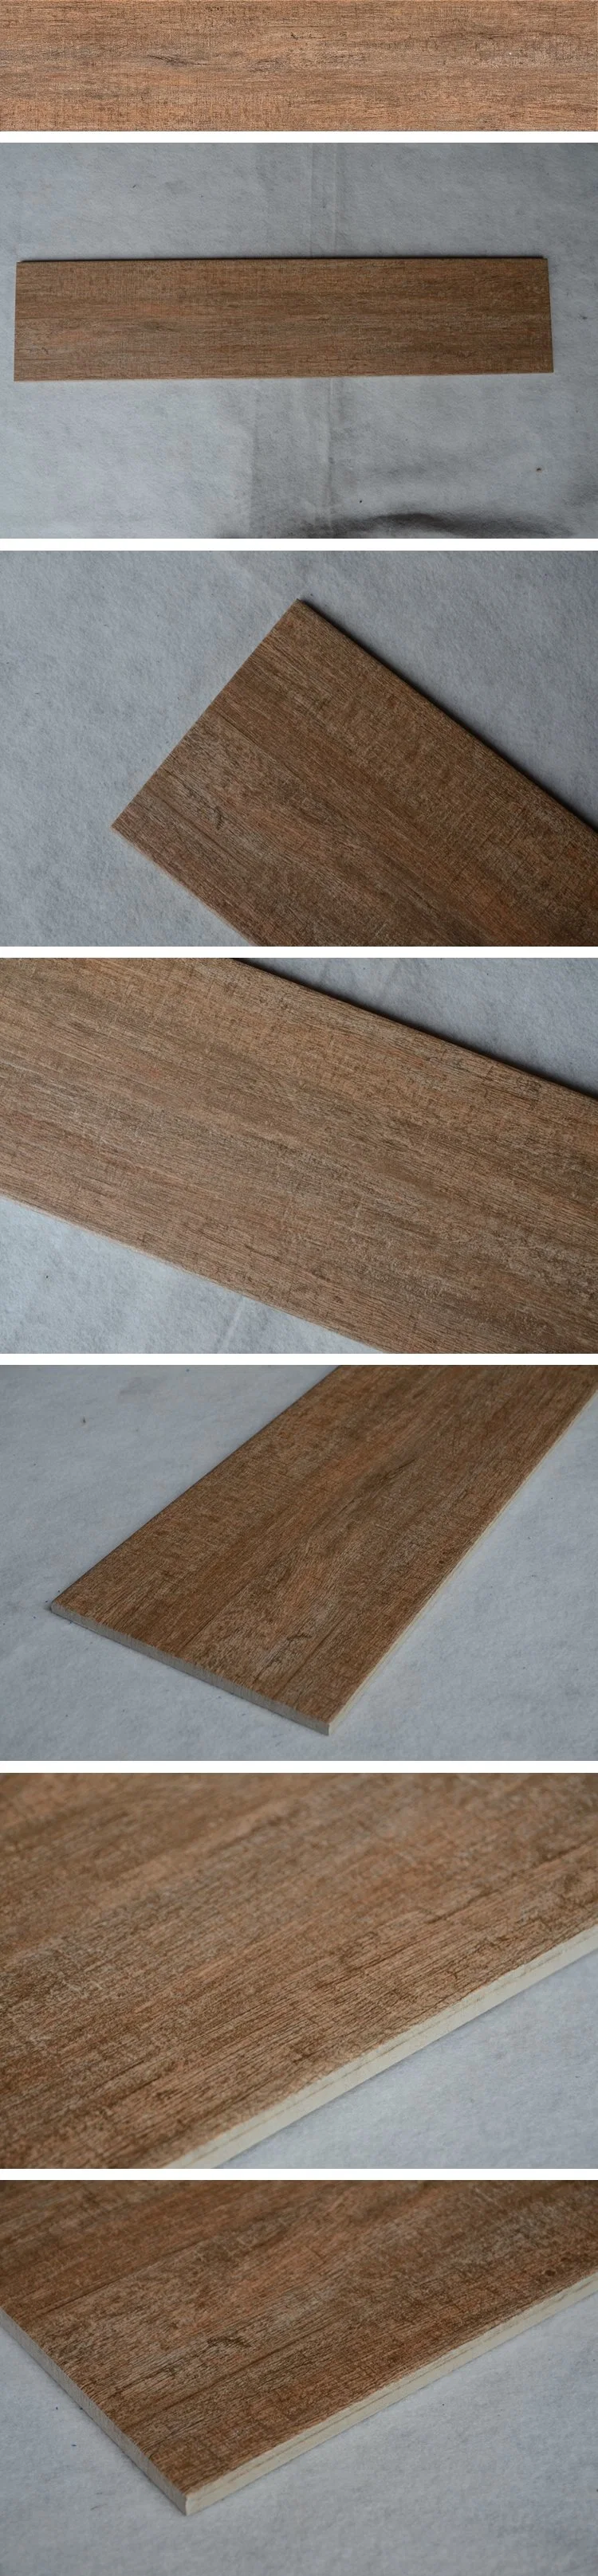 Rectified Ceramics Floor Wood Look Vs Hardwood Wall Tile Wooden